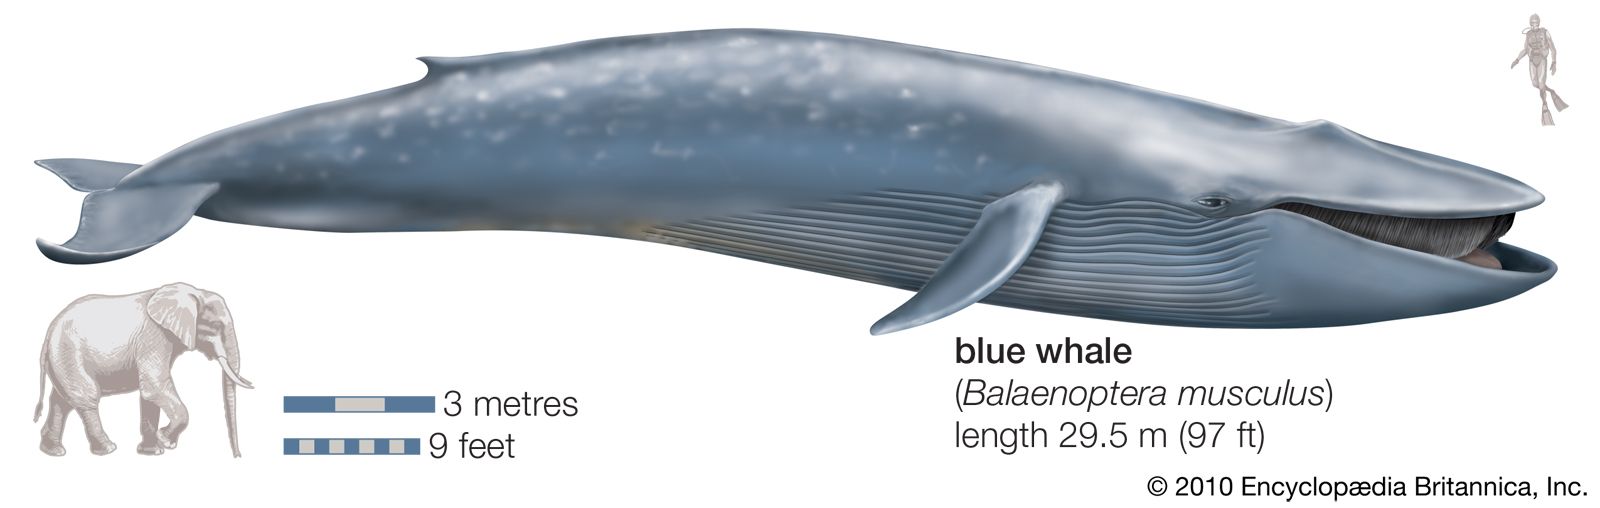 blue whale vs elephant size